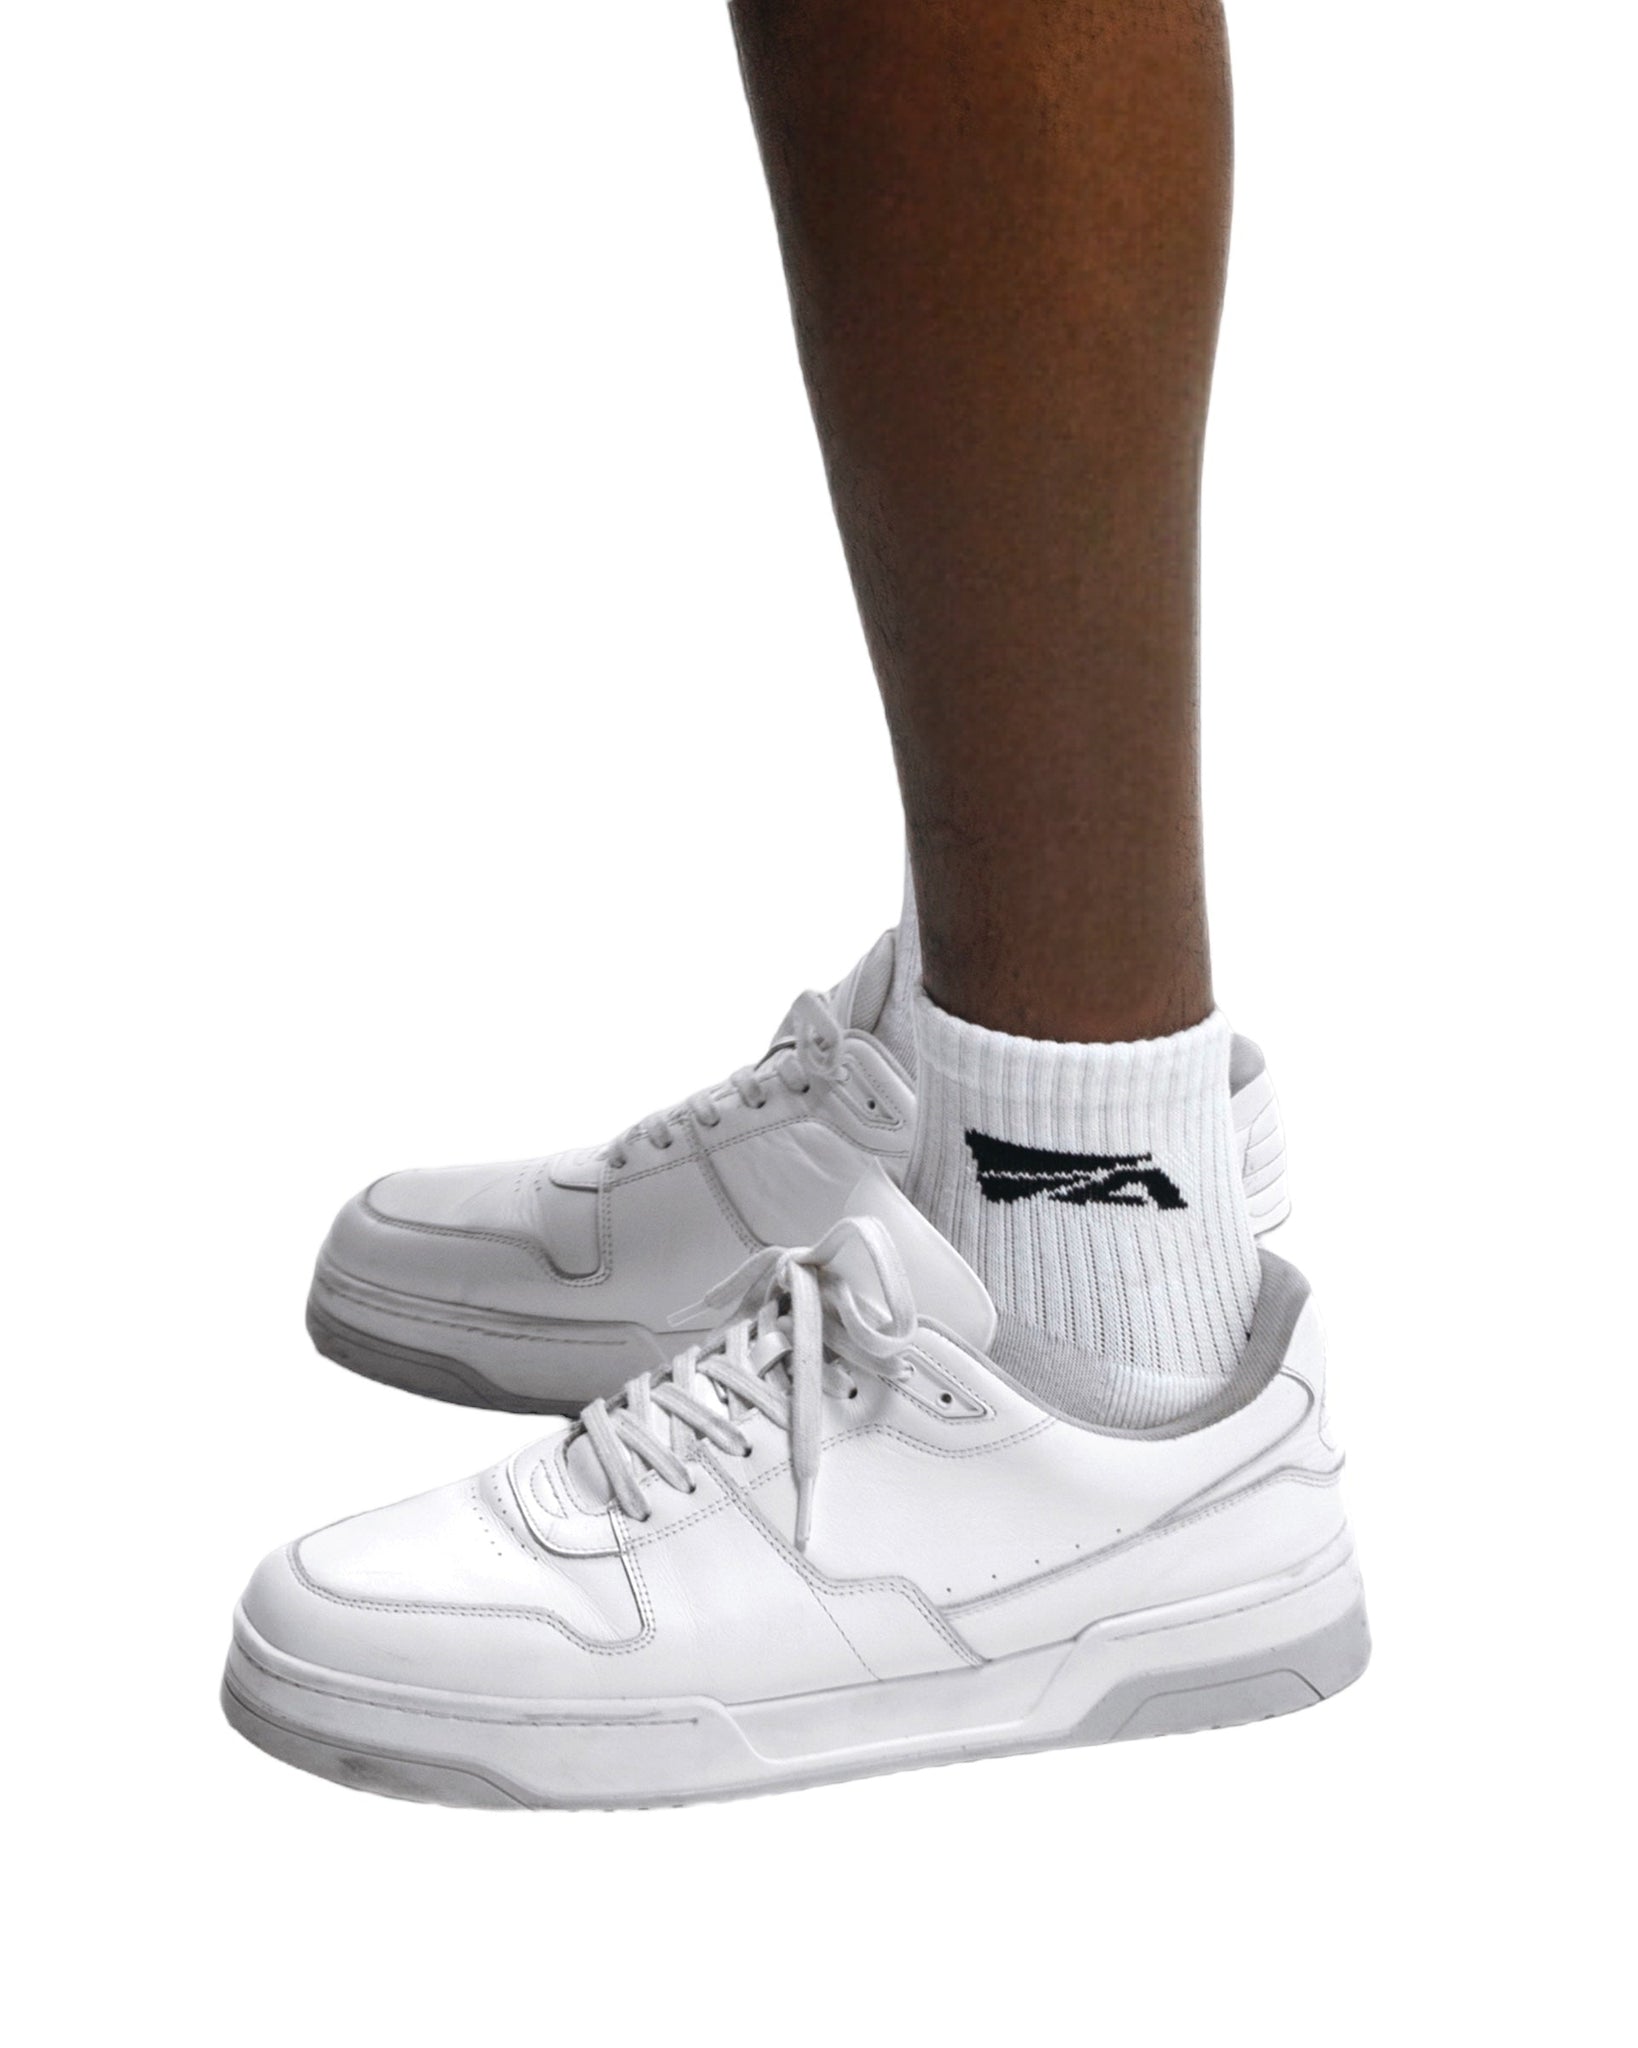 Quarter Socks (White)